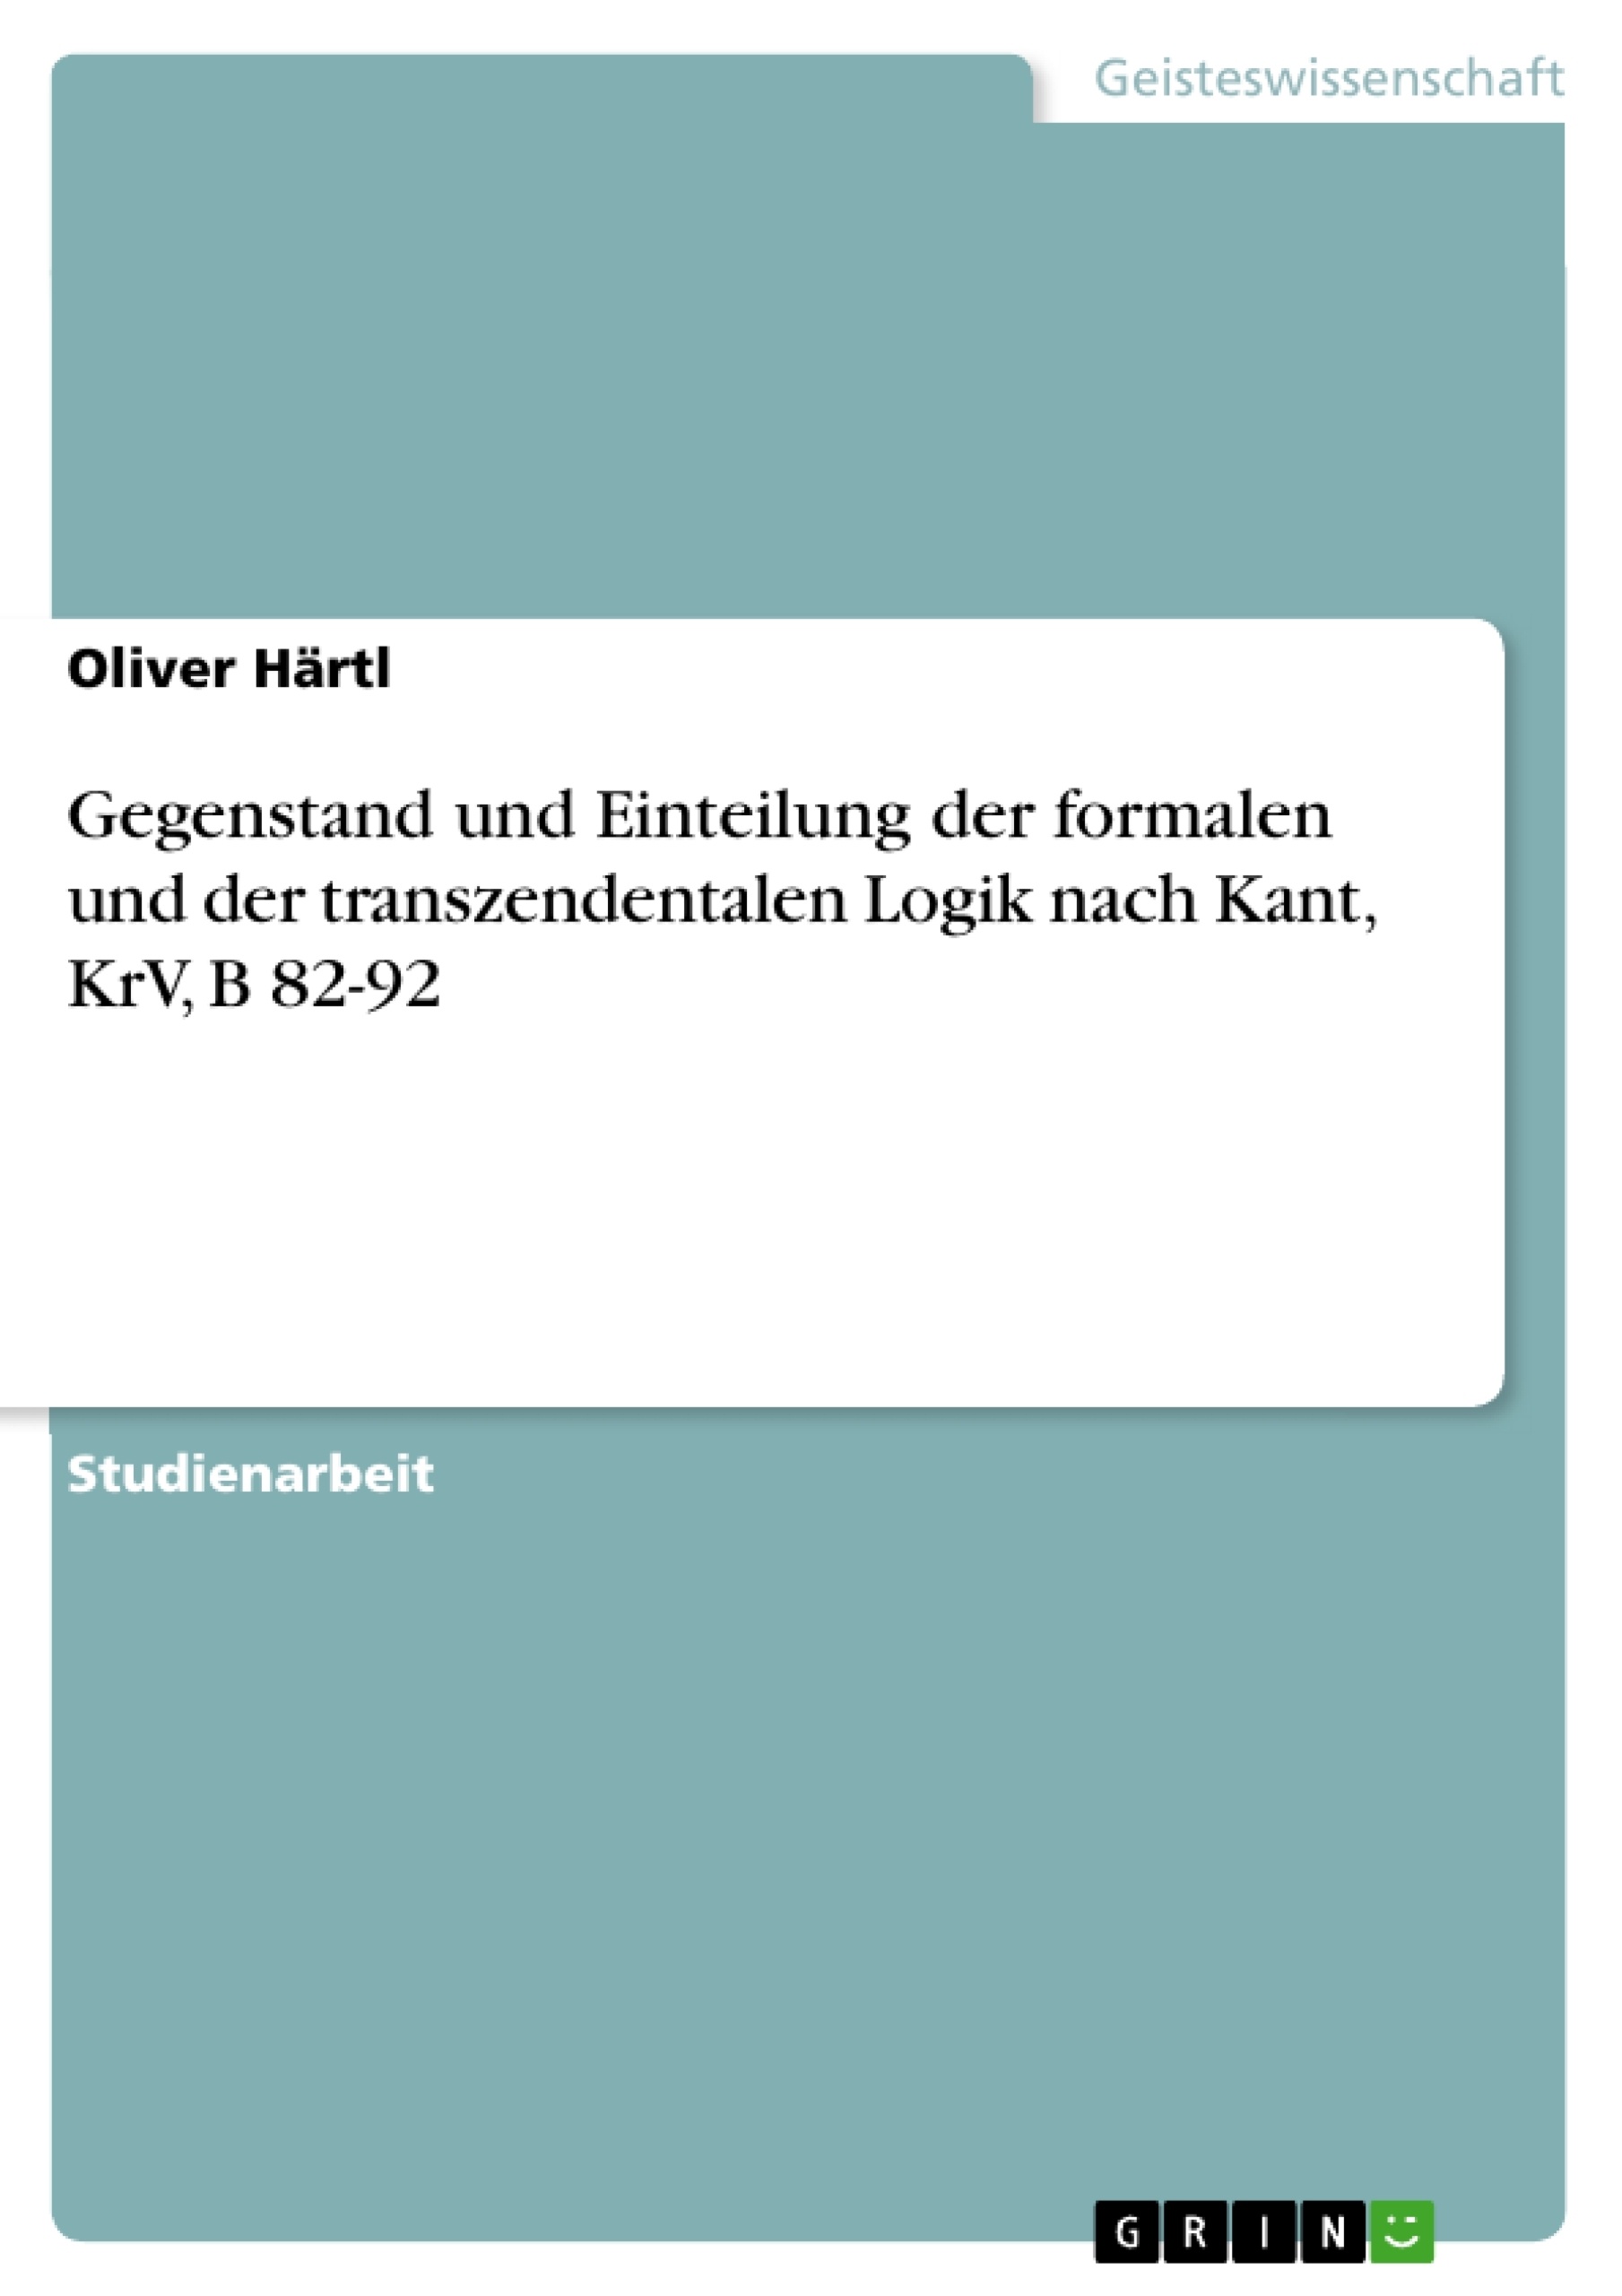 Titre: Gegenstand und Einteilung der formalen und der transzendentalen Logik nach Kant, KrV, B 82-92